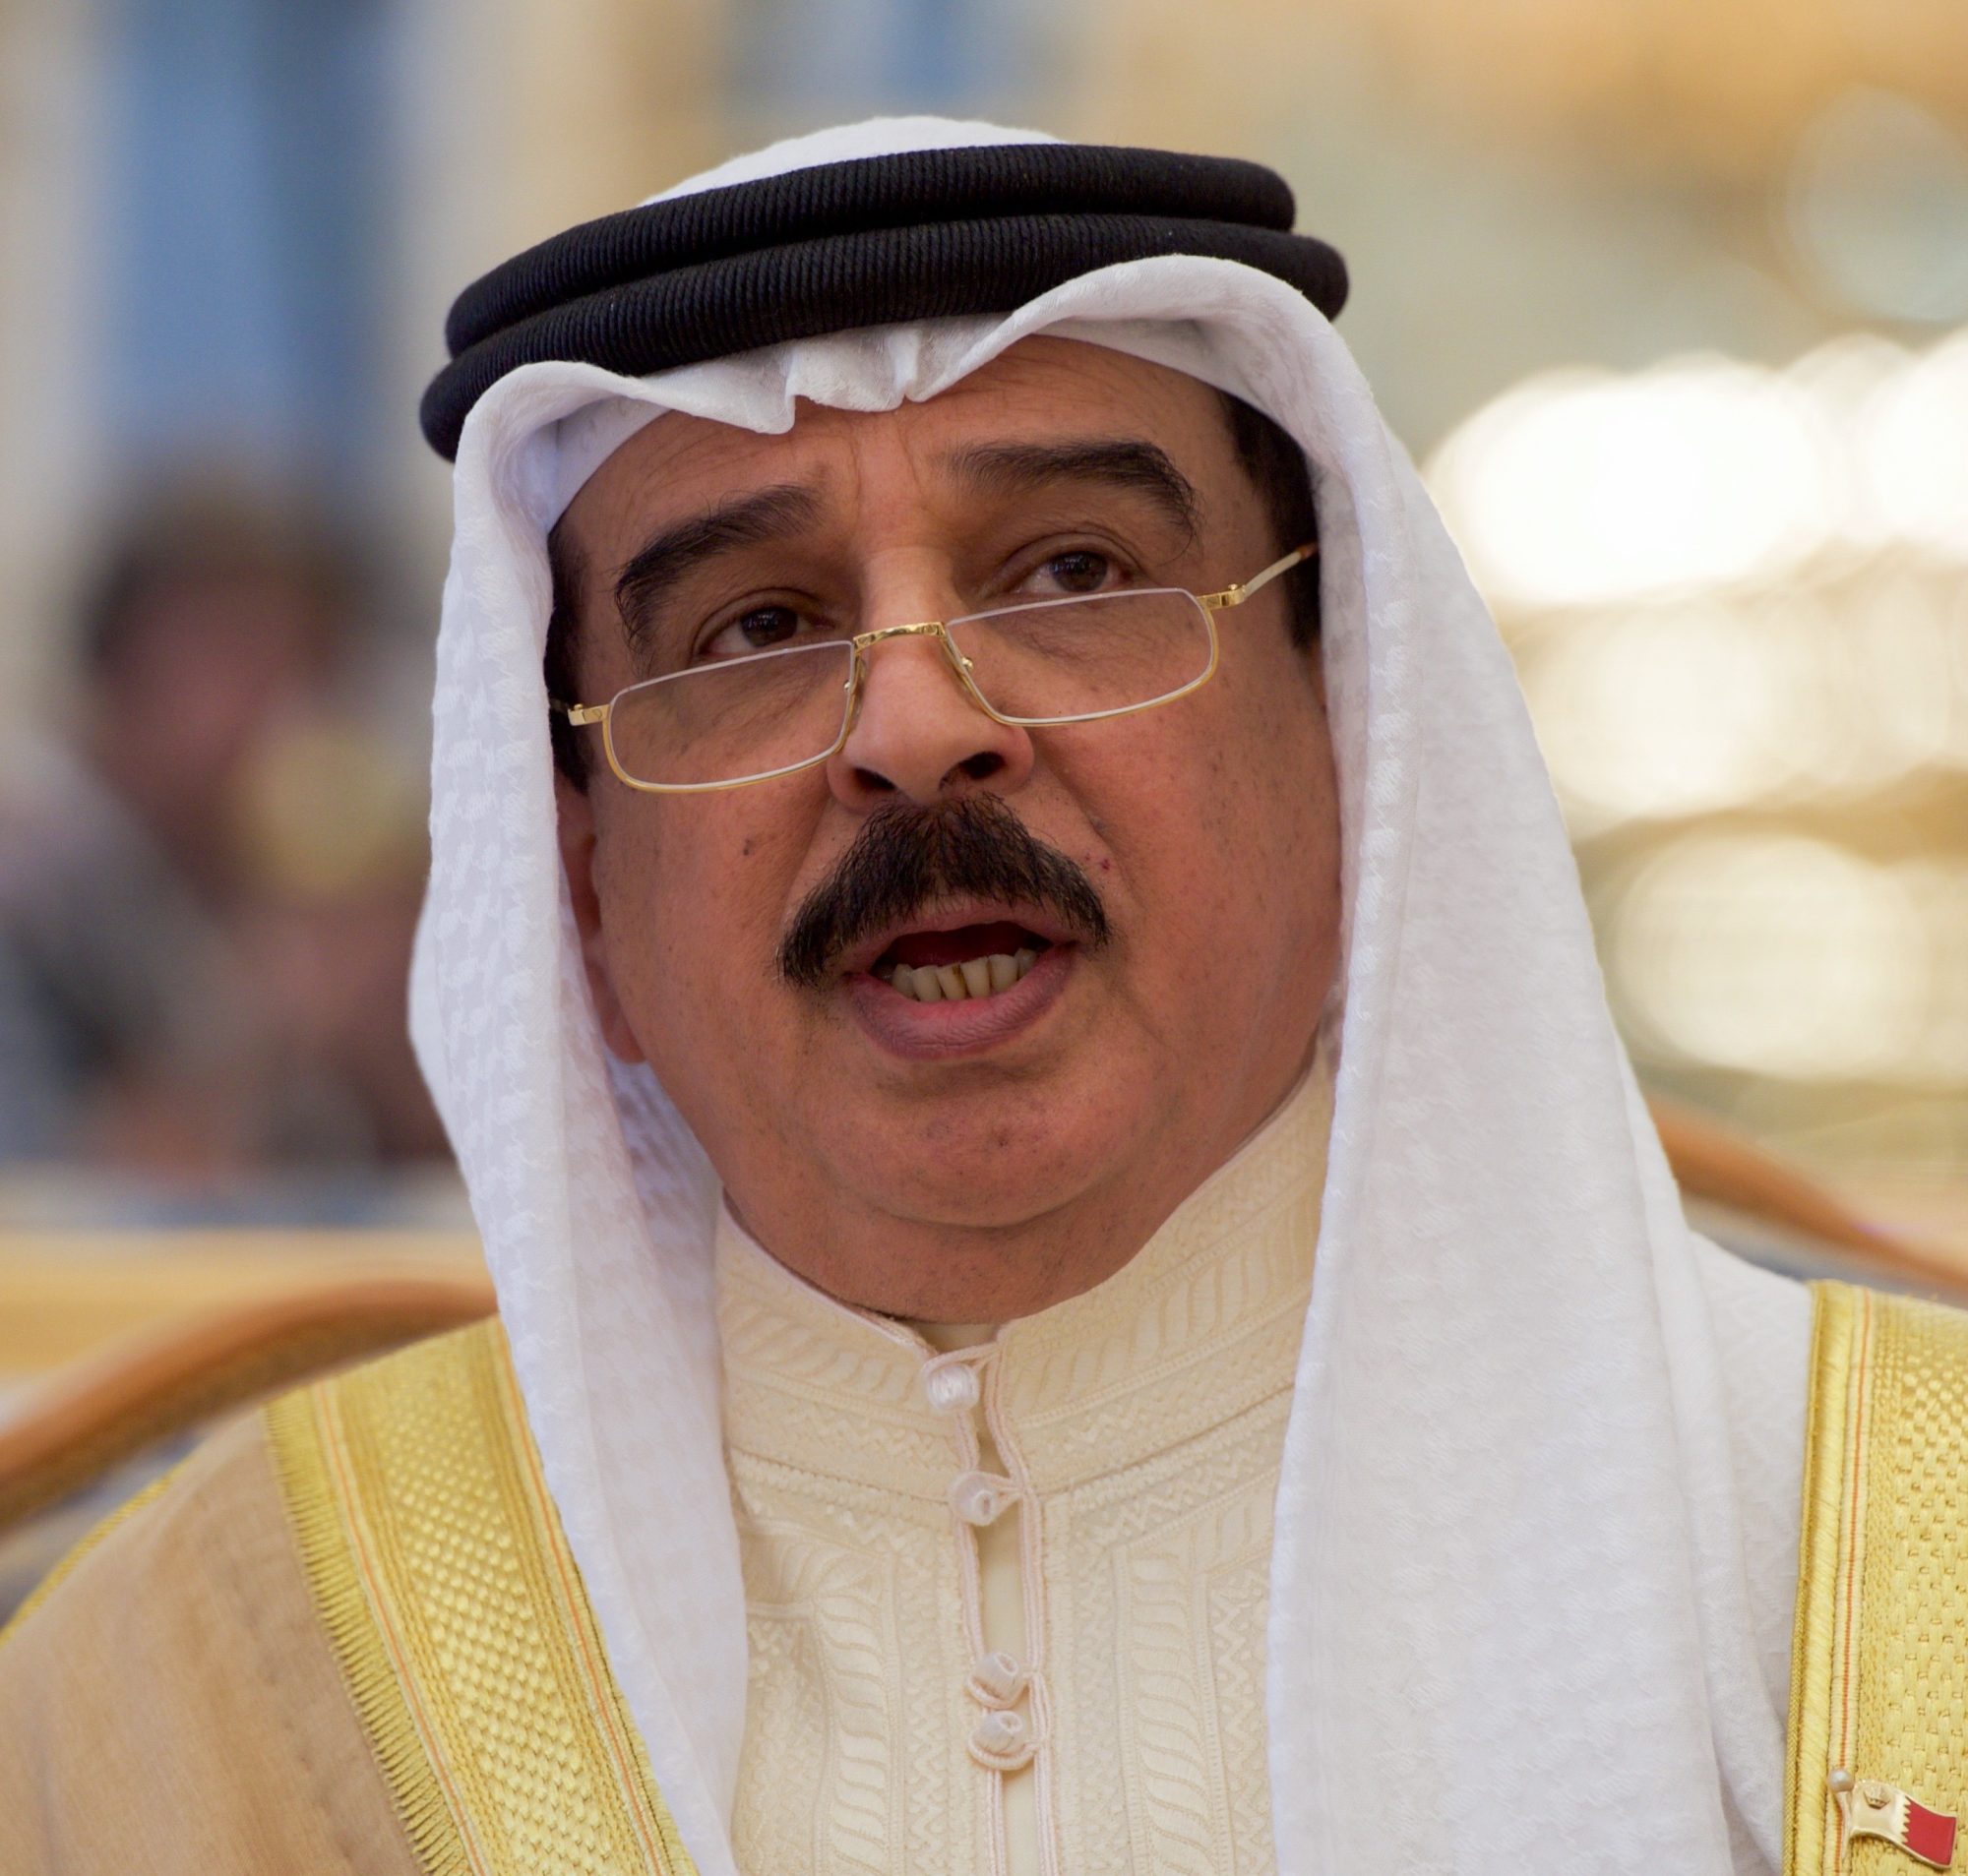 الحكم الخليفي في البحرين: اضطهاد الشعب وهدم المساجد واعتقال العلماء